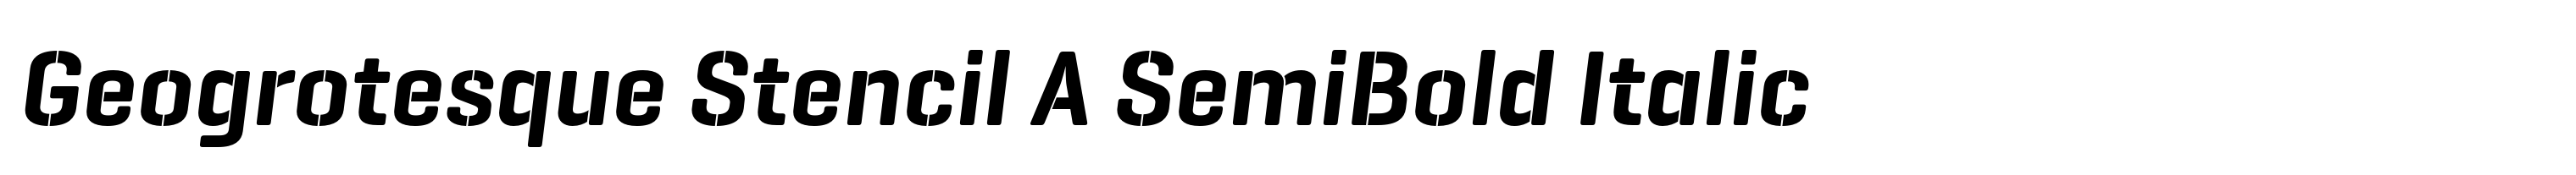 Geogrotesque Stencil A SemiBold Italic